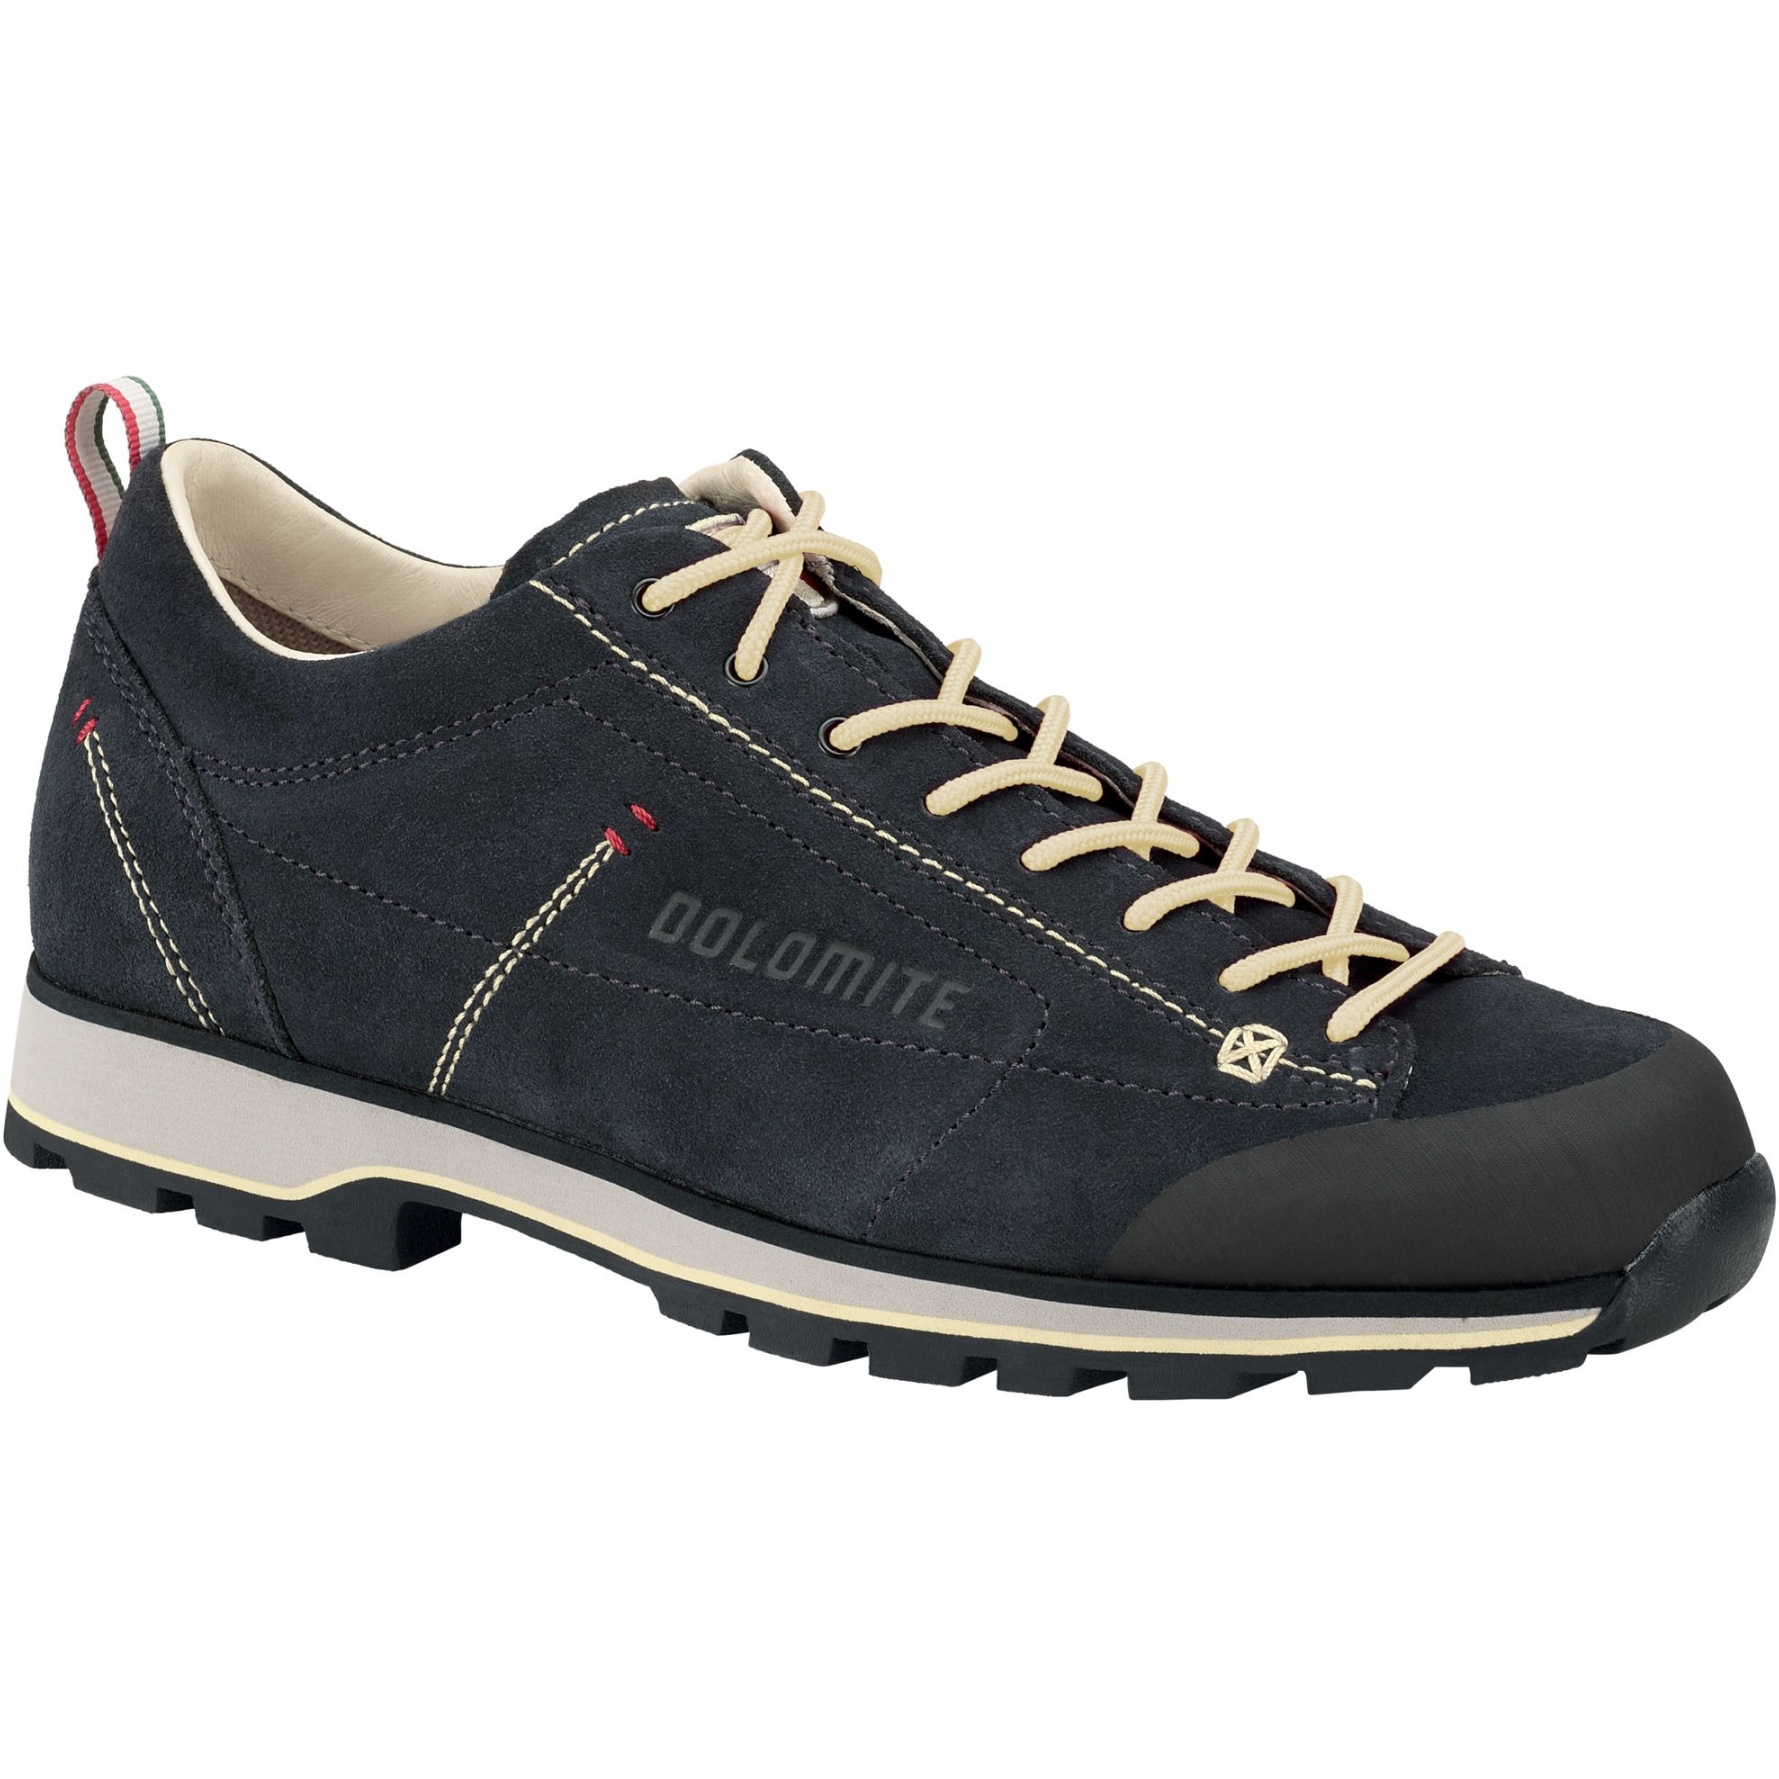 Produktbild von Dolomite 54 Low Schuhe Herren - blau/cord